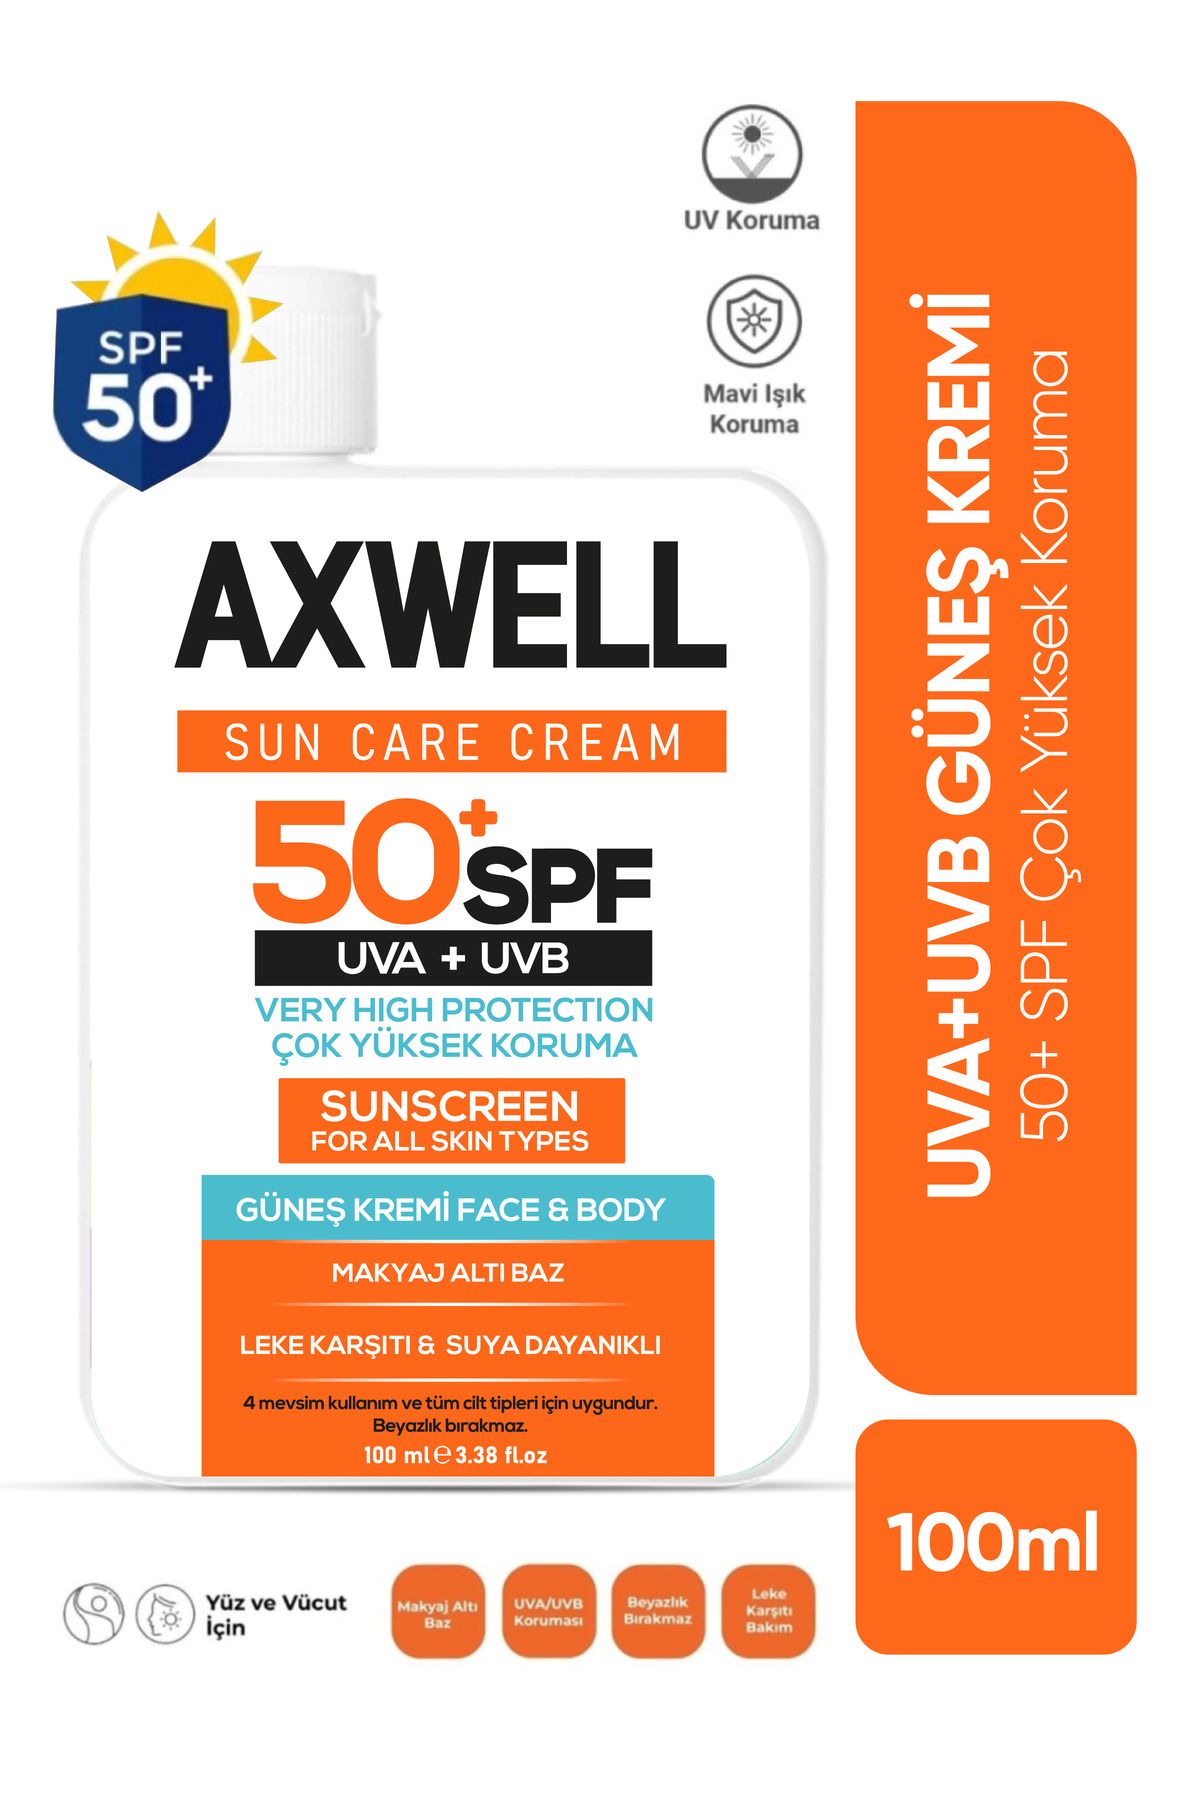 AXWELL Sun Care Cream Leke Karşıtı Güneş Kremi Çok Yüksek Koruma 50+ Spf 100 ml